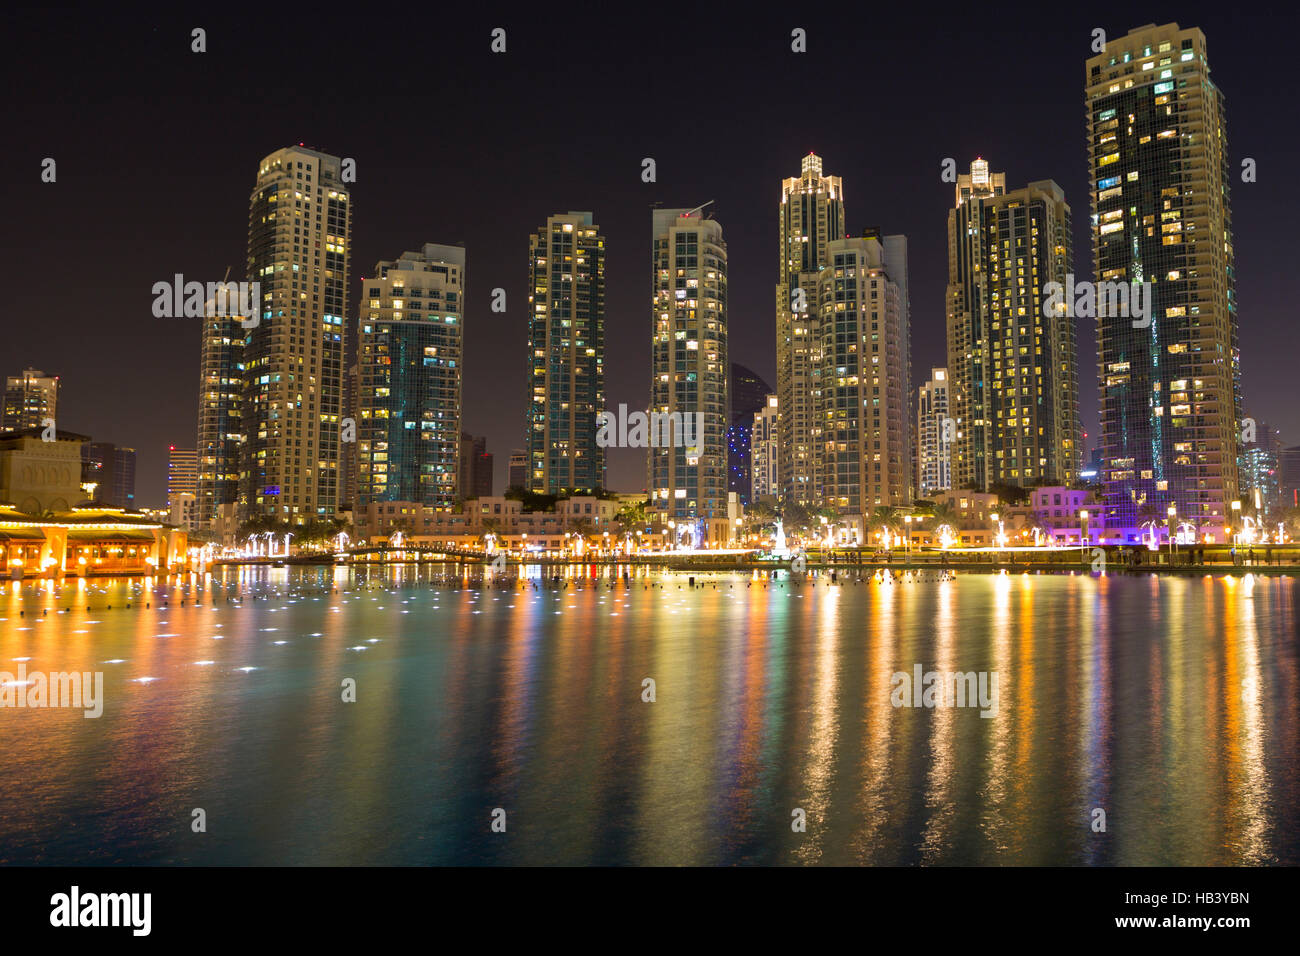 Dubai night city skyline with modern skycrapers, UAE Stock Photo